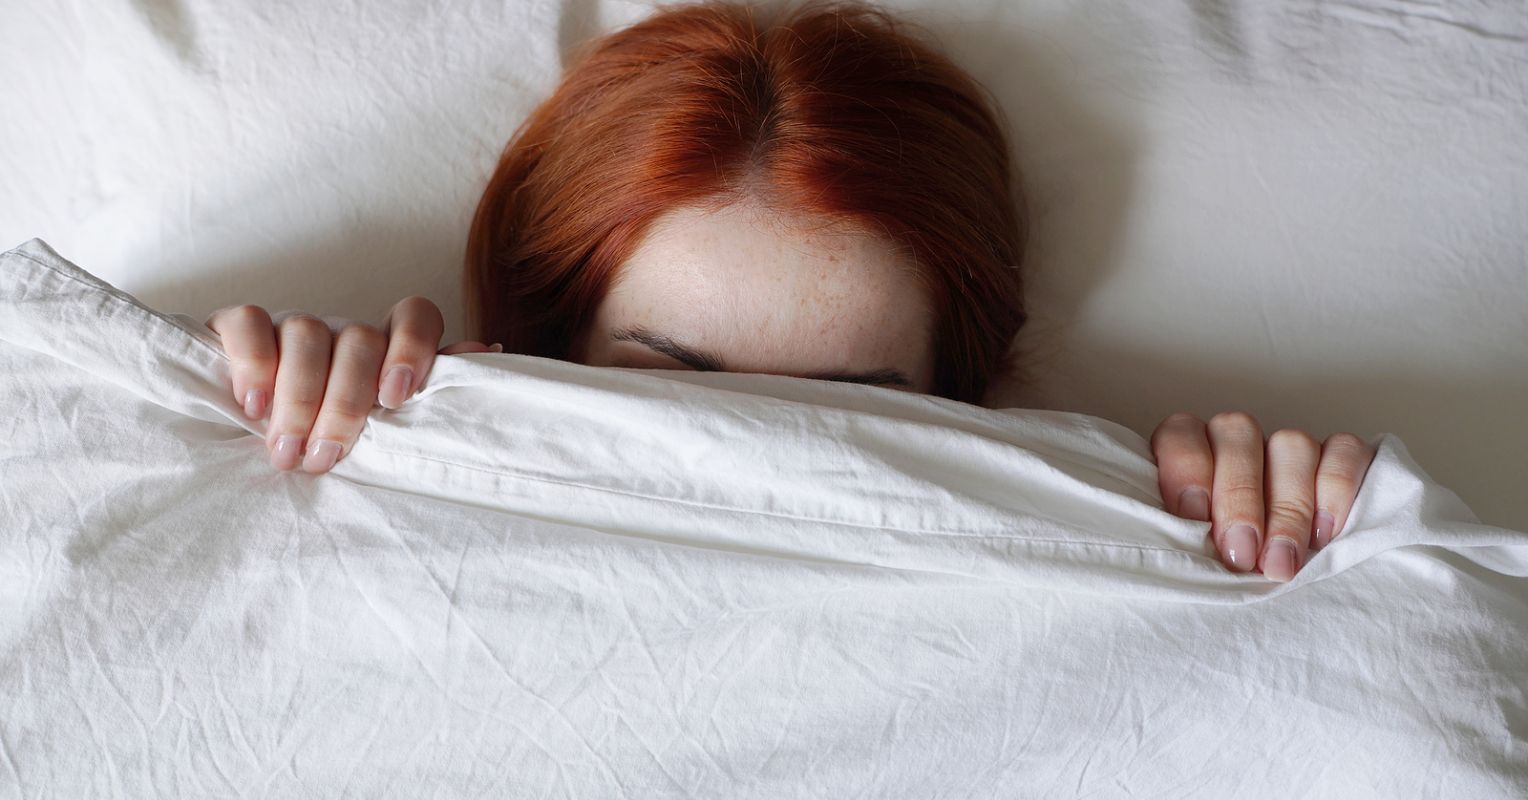 Рыжая девушка под одеялом. Девушка прячется под одеялом. Рыжеватые девушки под одеялом. Девушка прячет лицо под одеяло.